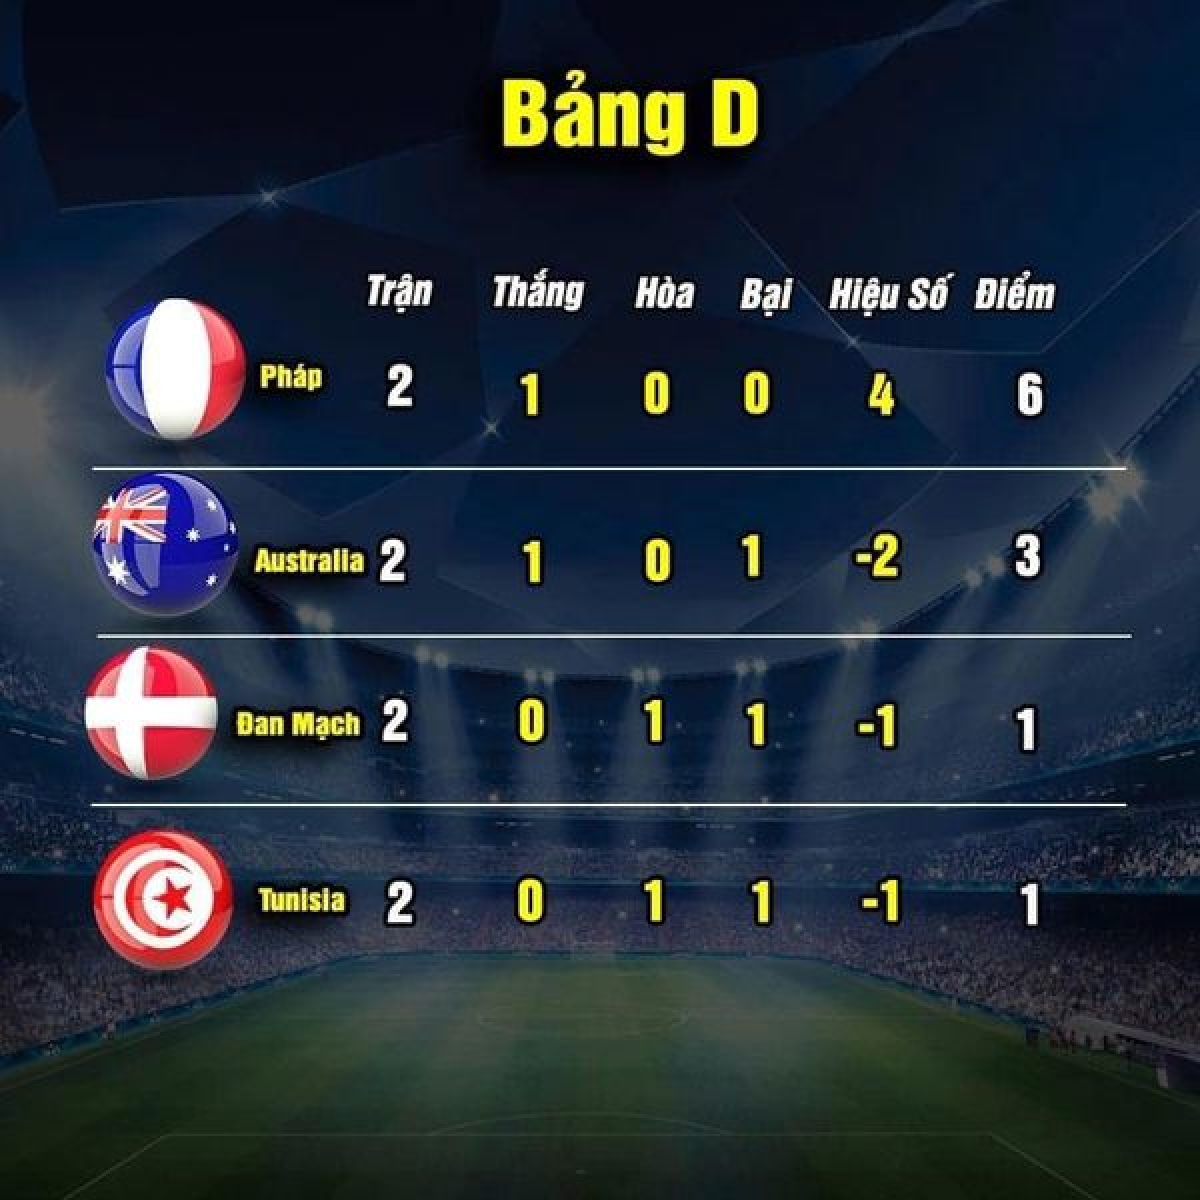 Cục diện bảng D sau hai lượt trận (ảnh: Thethao.vn) 